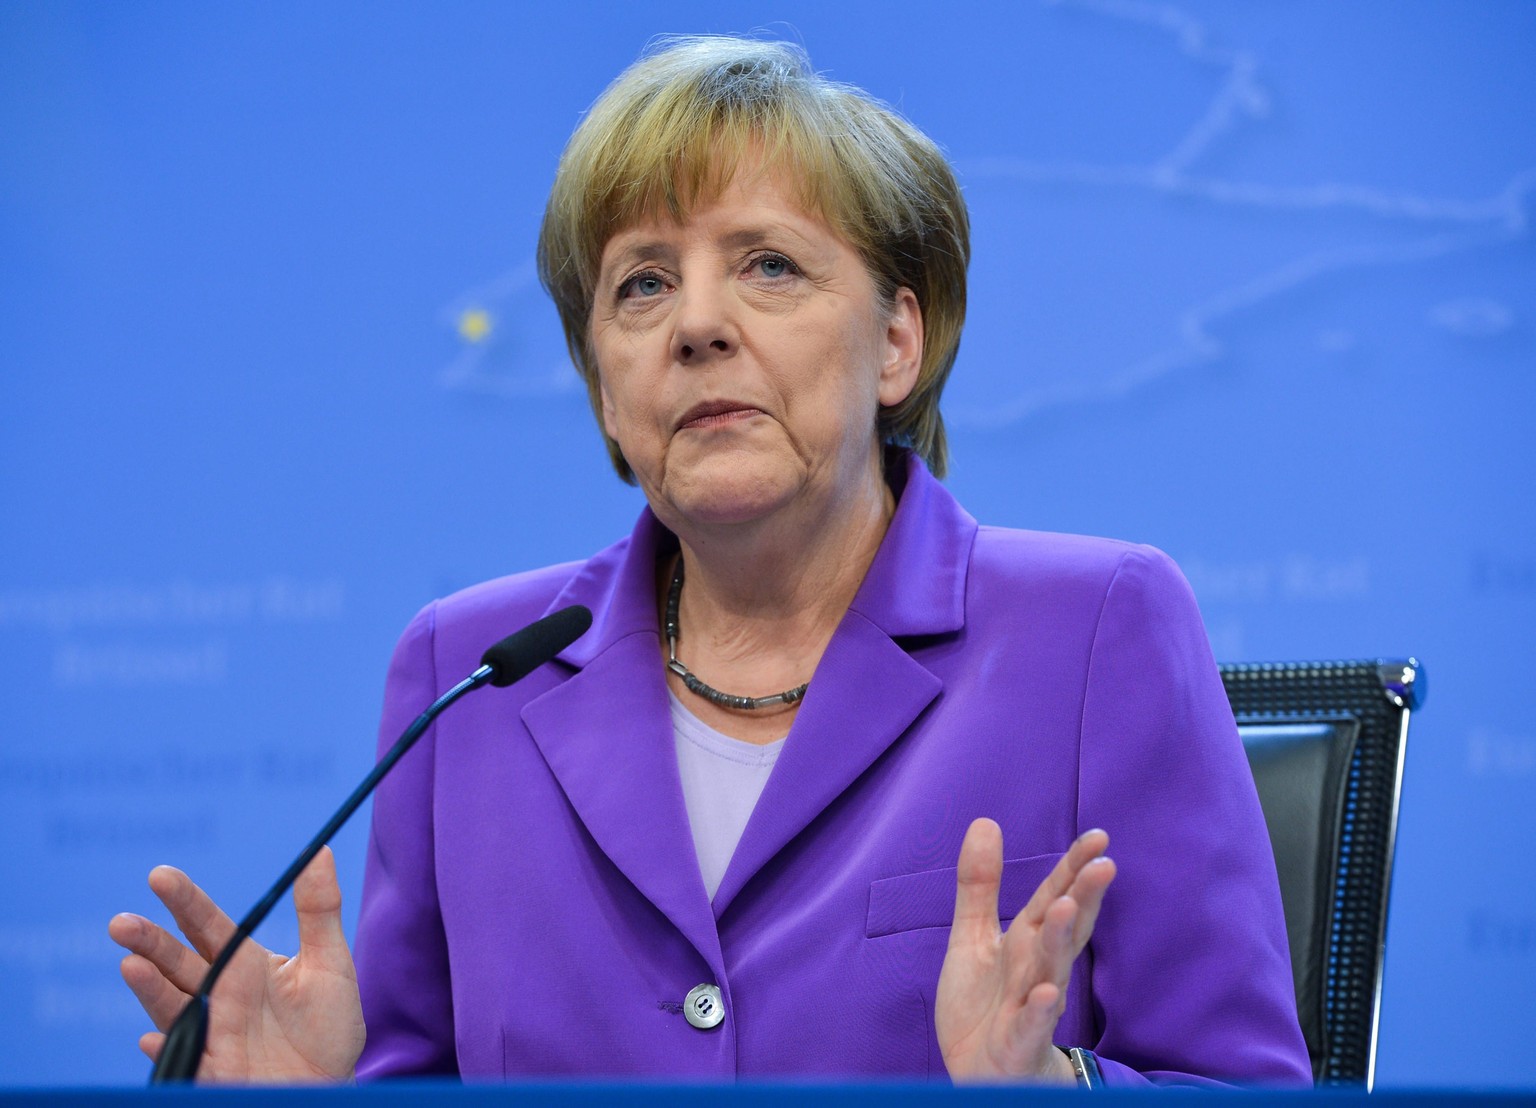 Sogar Angela Merkel, eine der mächtigsten Frauen der Welt, zweifelt ab und an an ihren Fähigkeiten.